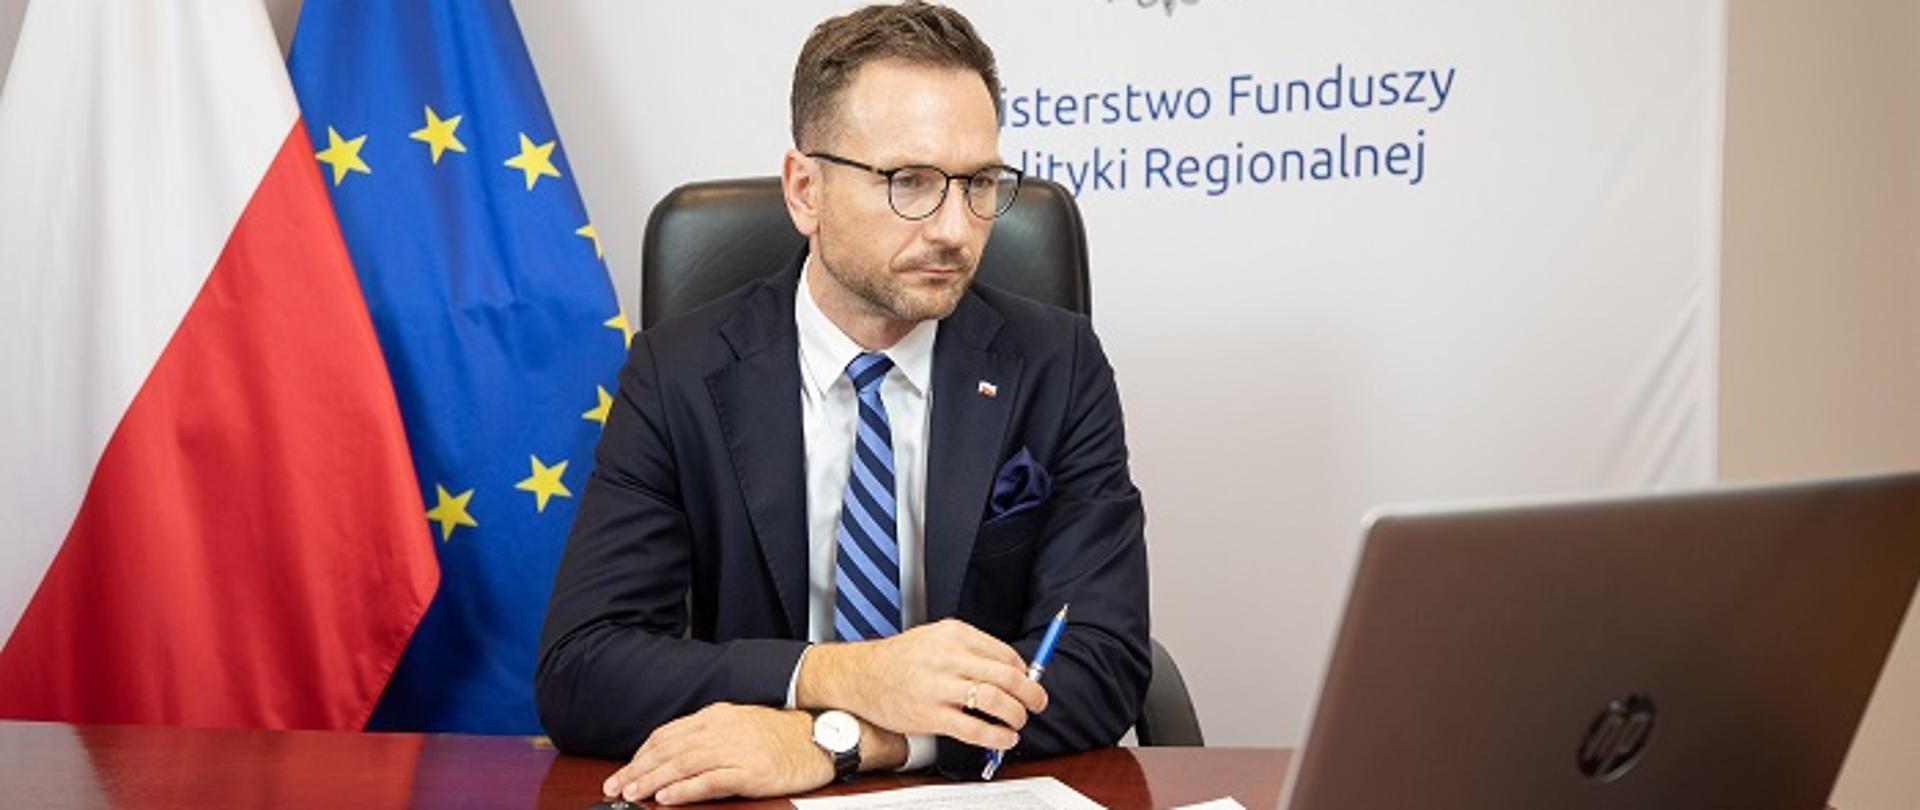 Wiceminister Waldemar Buda siedzi przy biurku, przed laptopem. Z tyłu widoczne flagi Polski i UE oraz logo MFiPR.